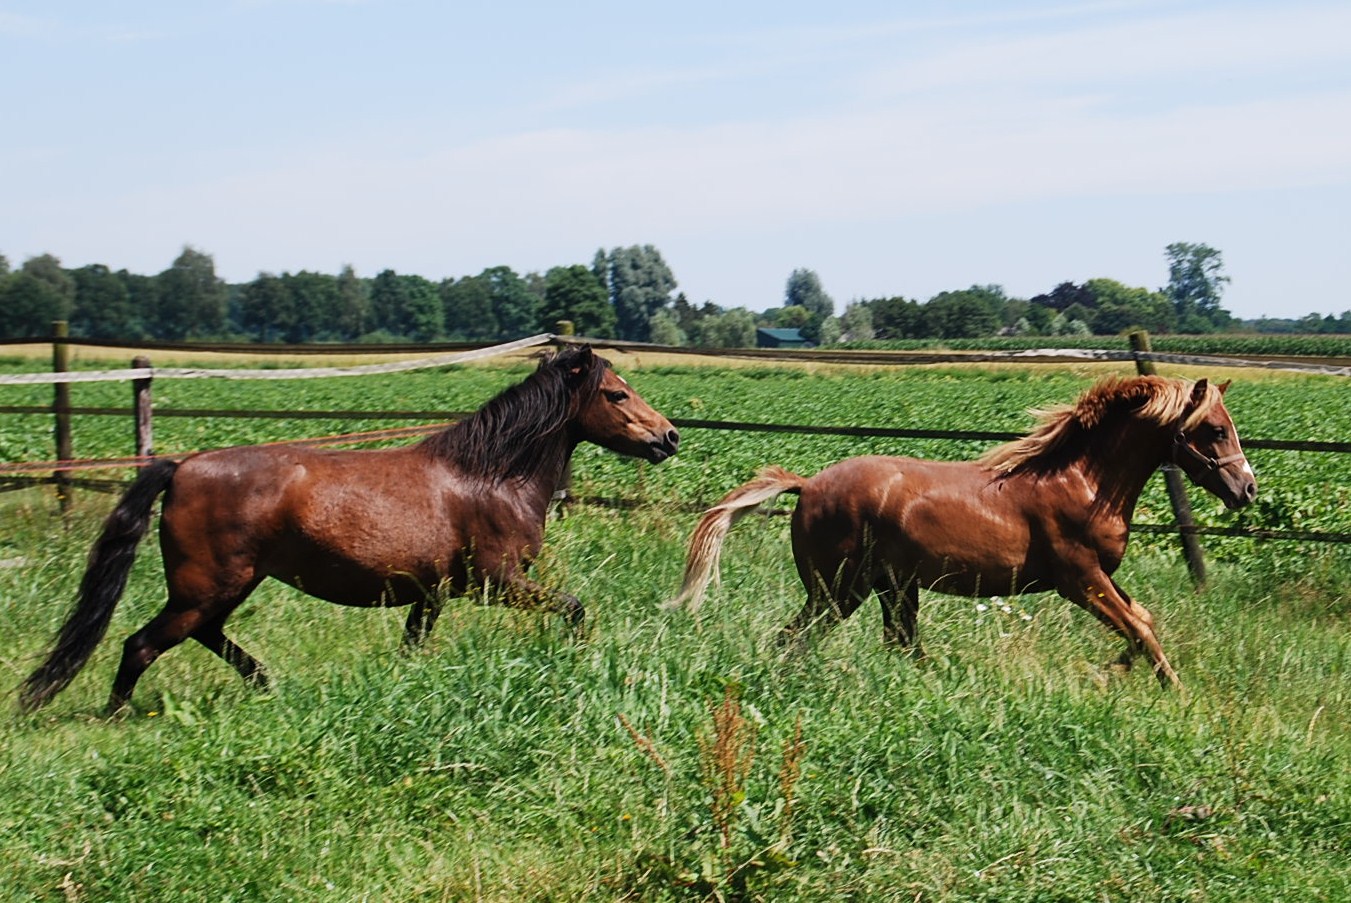 Paarden fotografeert Tjitske met veel plezier, want ze zijn ook haar eigen grote passie. Deze energieke Dartmore pony's zijn van Simon de Bruin, die ze interviewde voor Boerenvee.